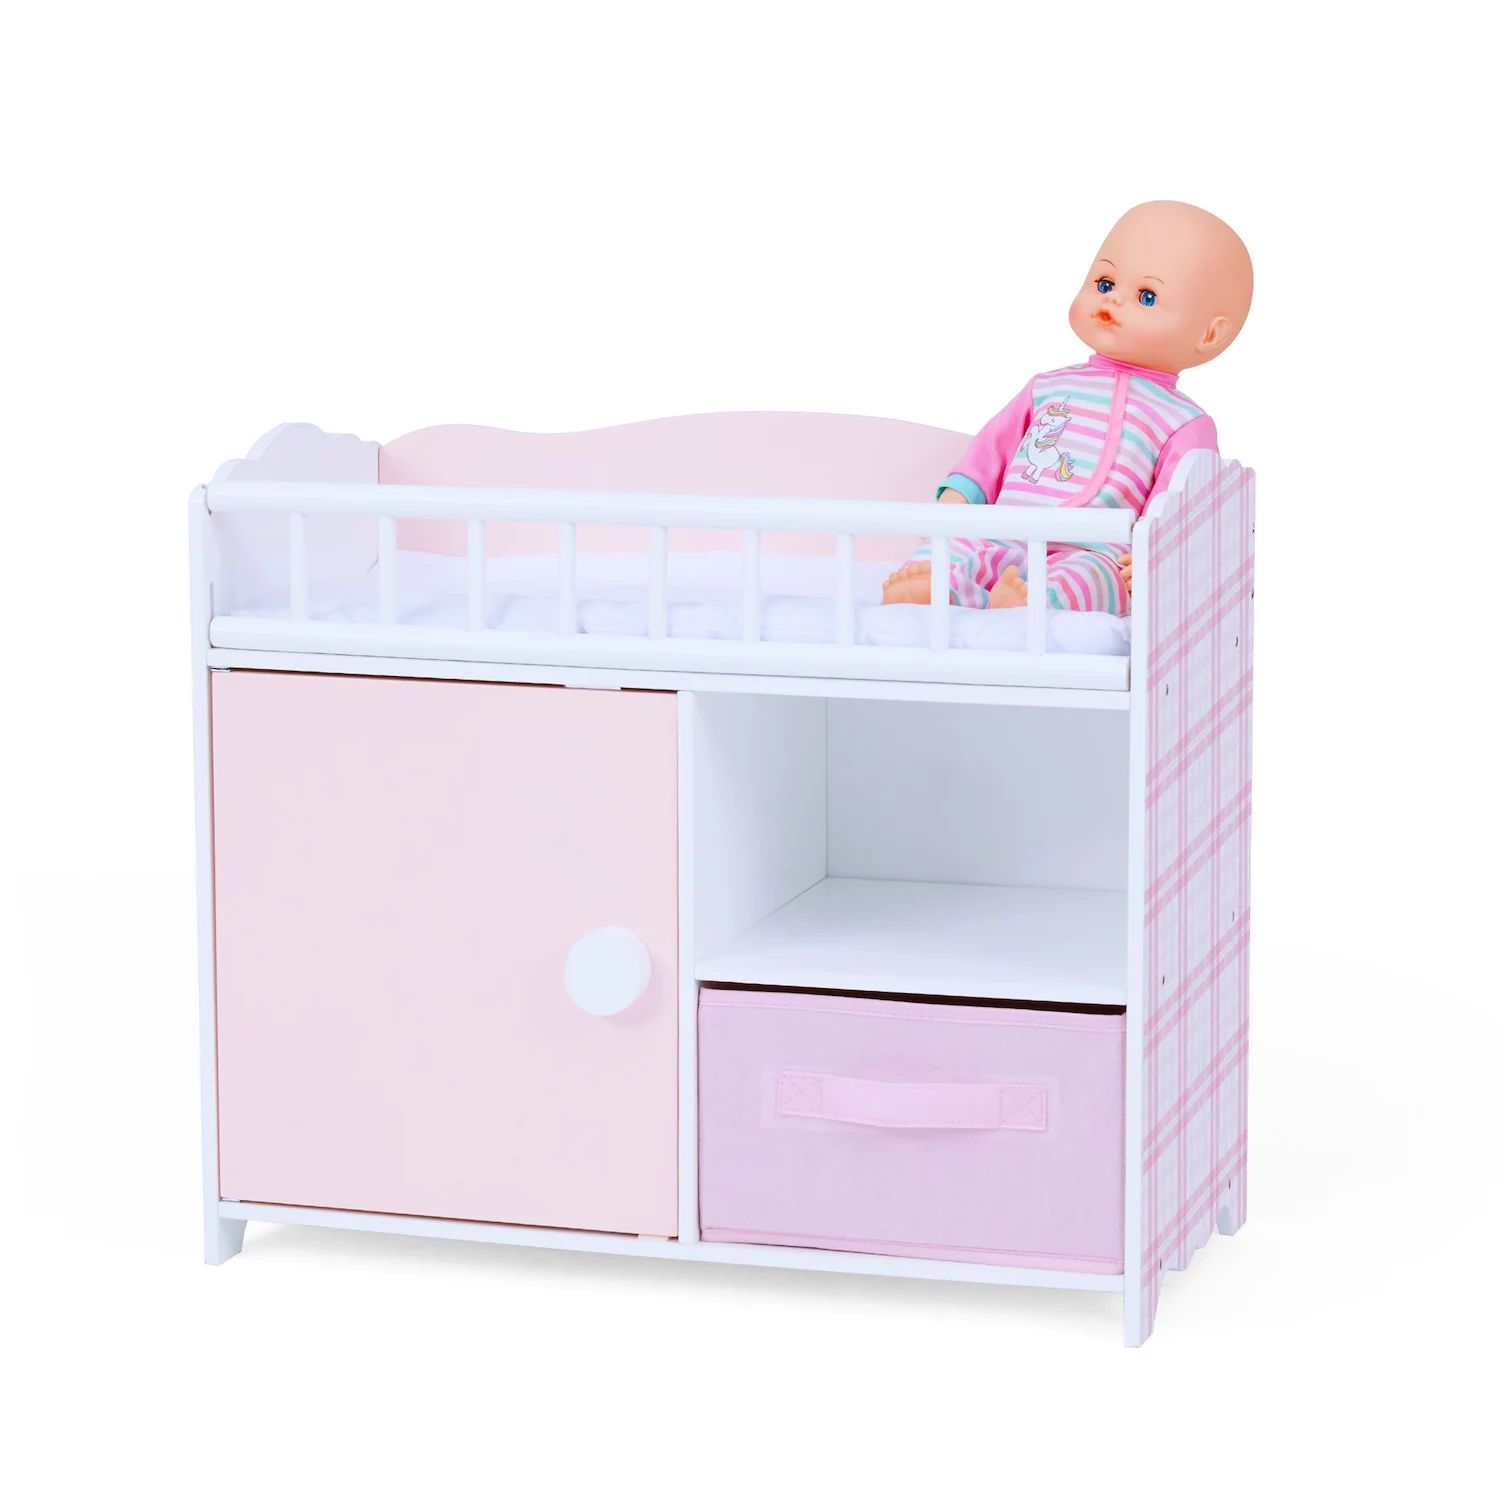 Маленький мир Оливии, принцесса Аврора, розовая клетчатая кукольная кровать с аксессуарами Olivia's Little World цена и фото